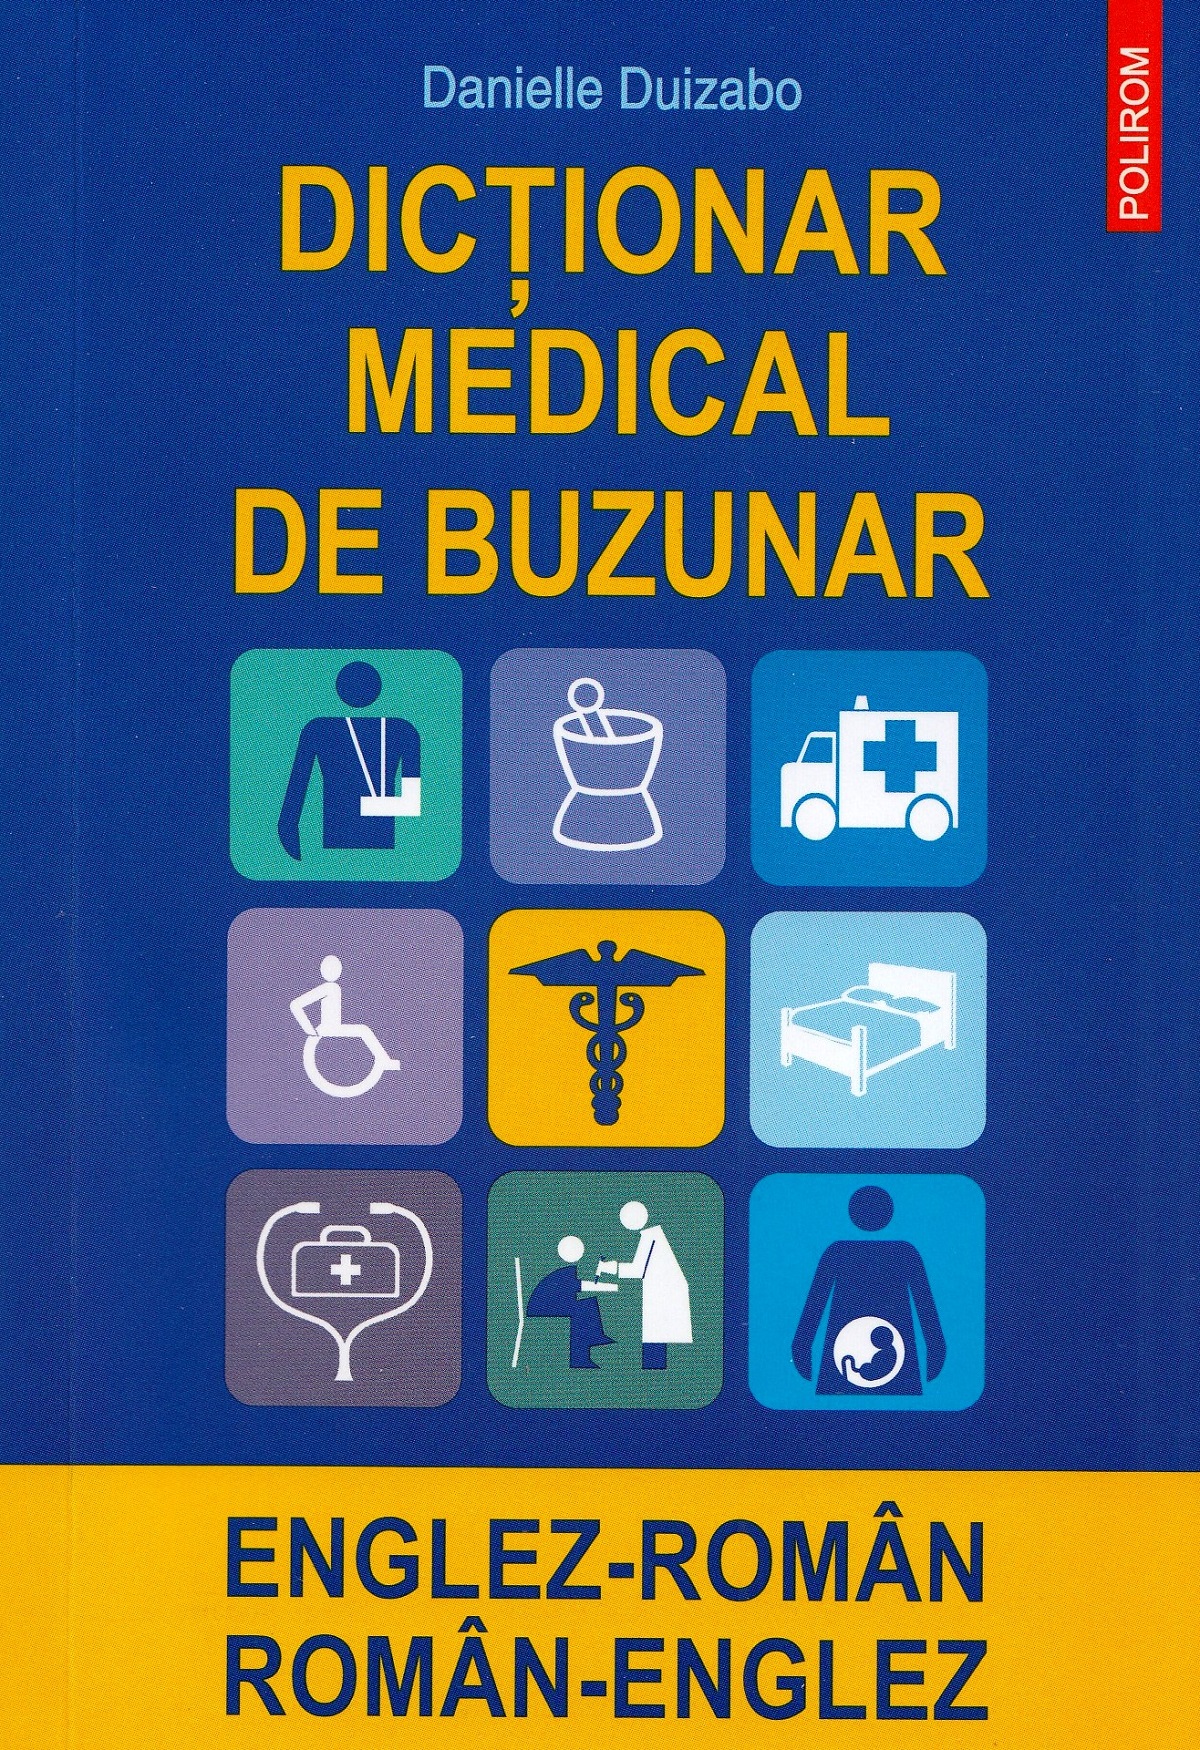 Dictionar medical de buzunar englez-roman, roman-englez - Danielle Duizabo